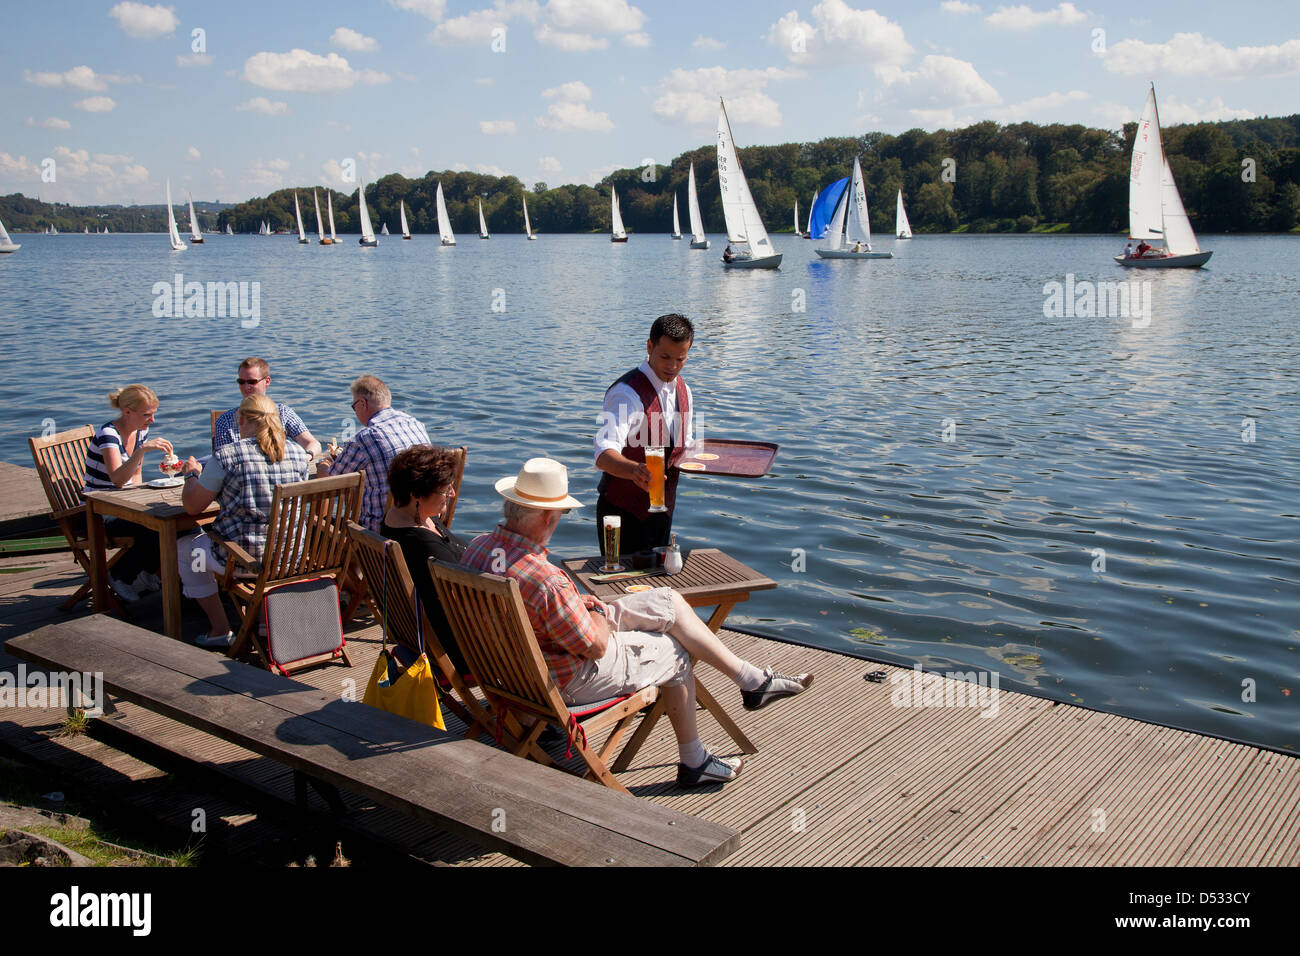 Essen, Germania, barche a vela sul lago Baldeneysee e persone al molo Foto Stock